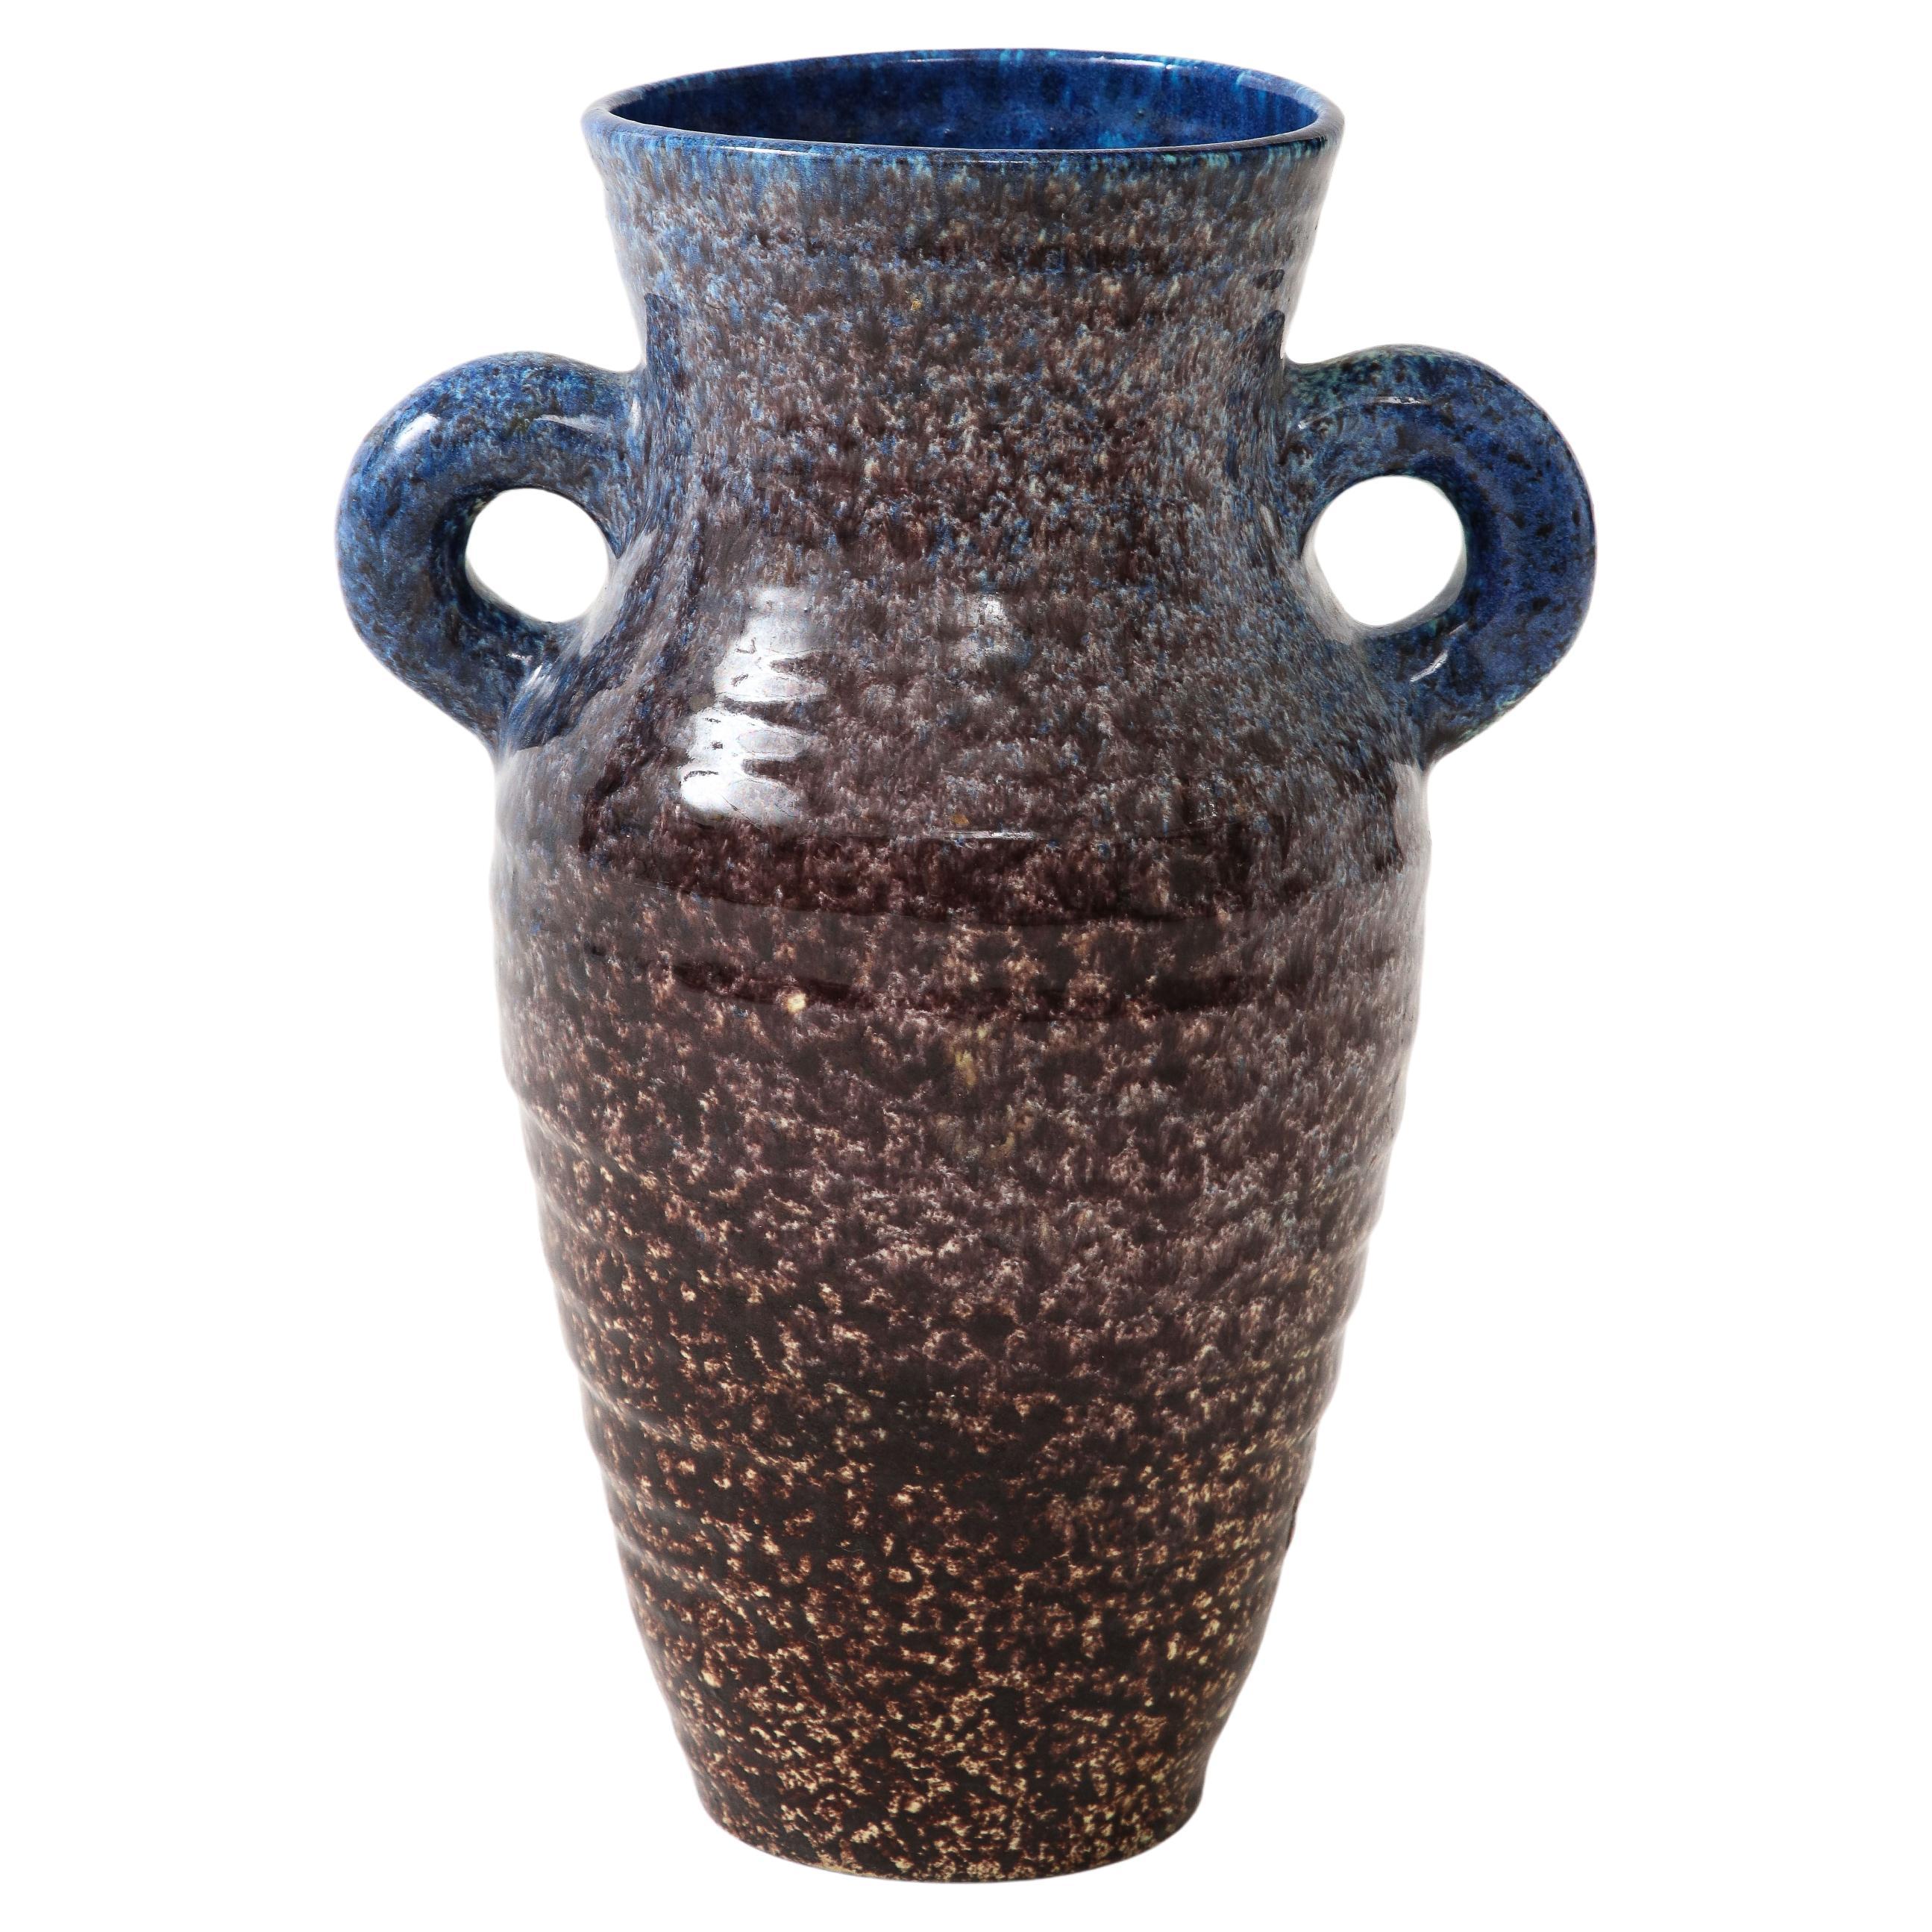 Keramikkrug von Accolay Pottery